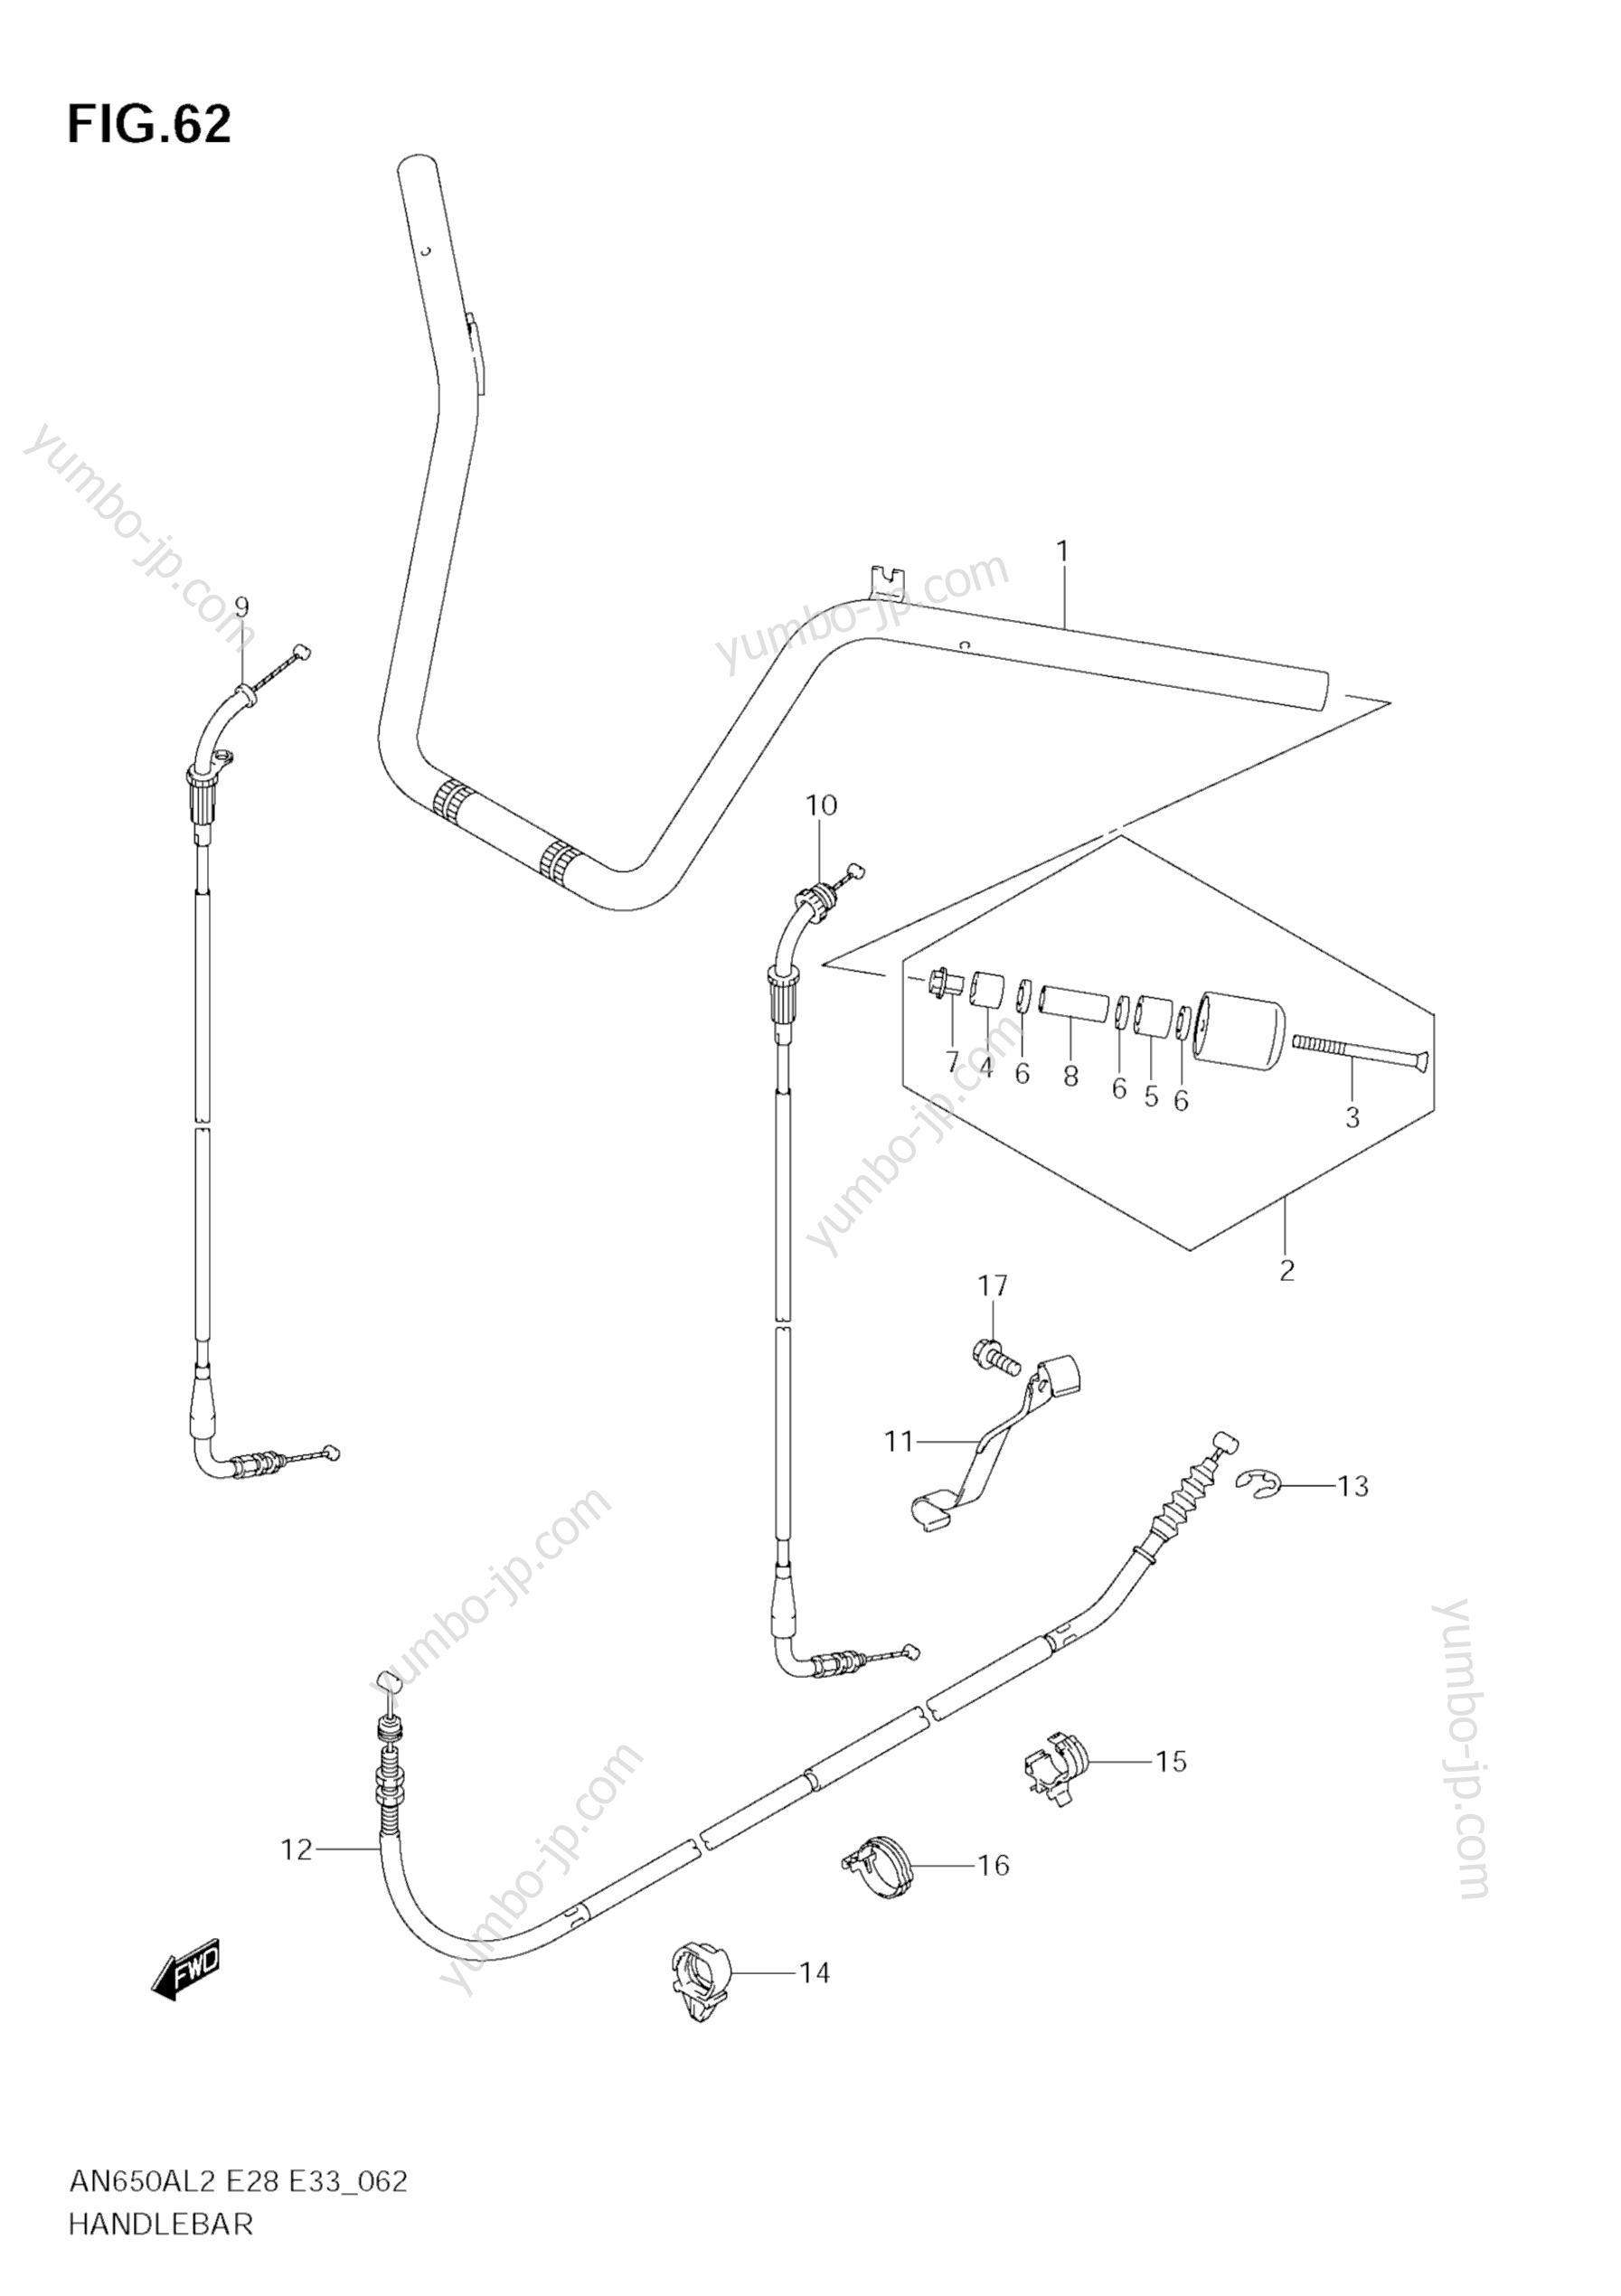 Румпель (рукоятка управления) для скутеров SUZUKI Burgman (AN650A) 2012 г.